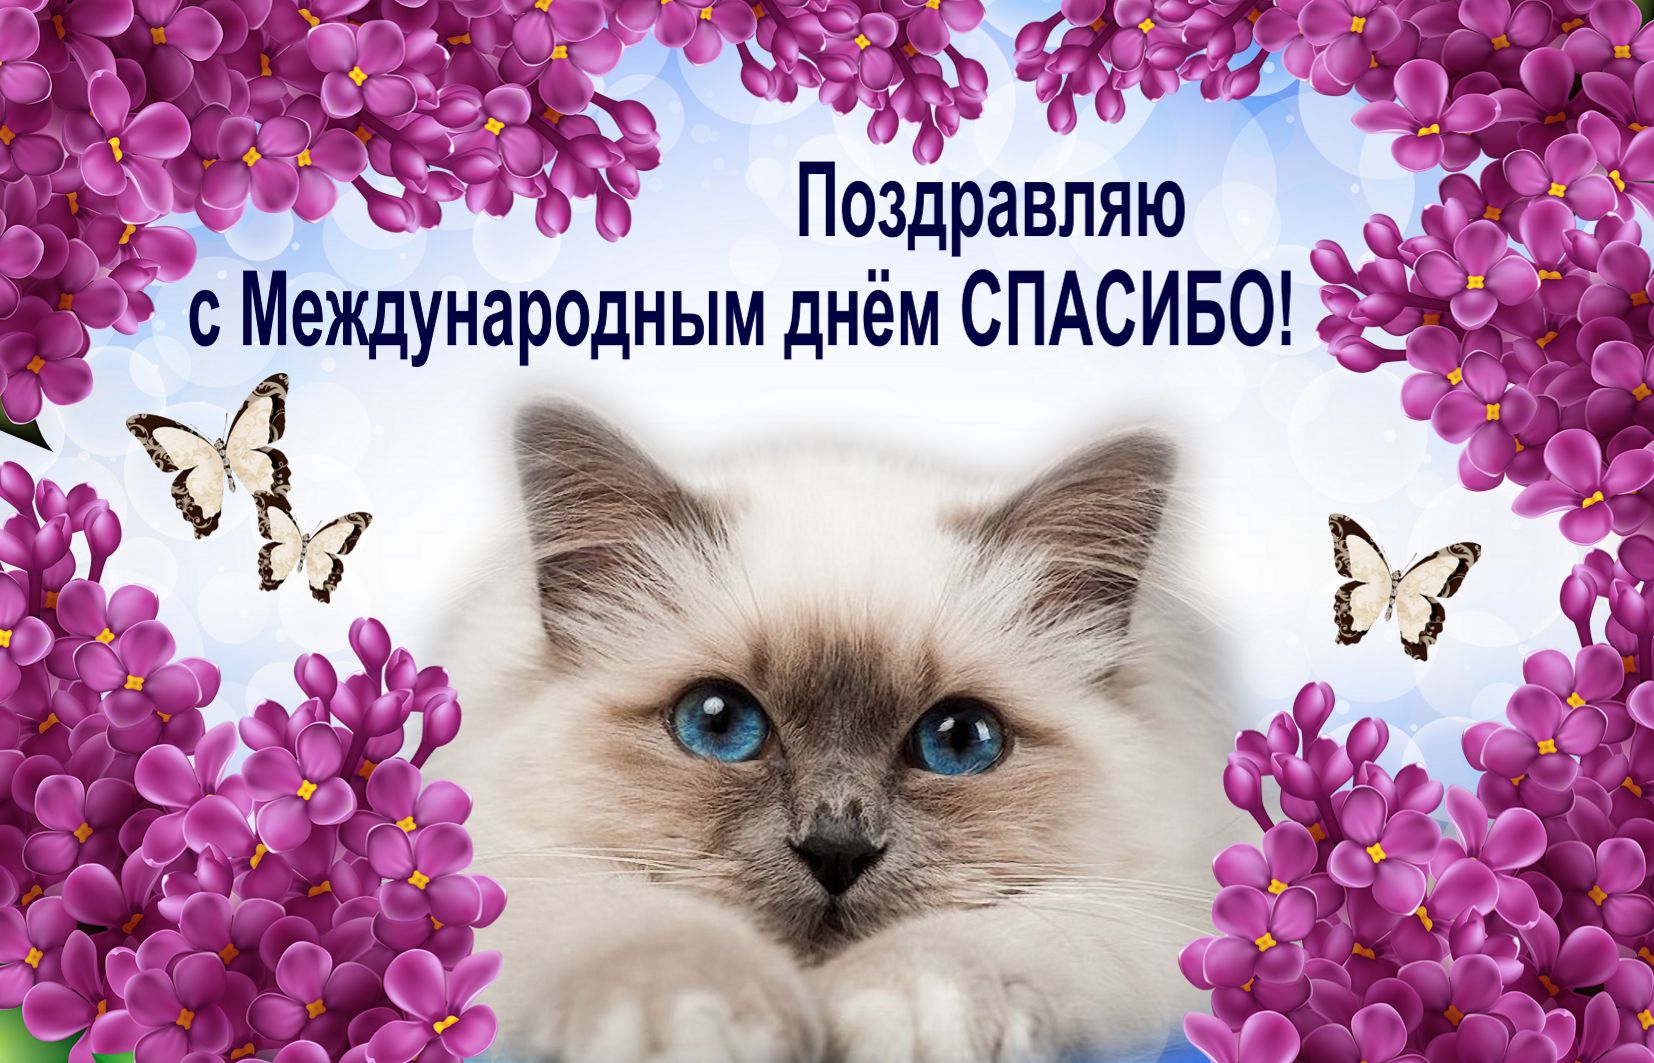 Открытка международный день спасибо ,с праздником день спасибо ,котик. Картинка открытка с праздником день спасибо , открытки с международным днём спасибо ,картинки на день спасибо , с котиком ,открытка день спасибо скачать беспалатно